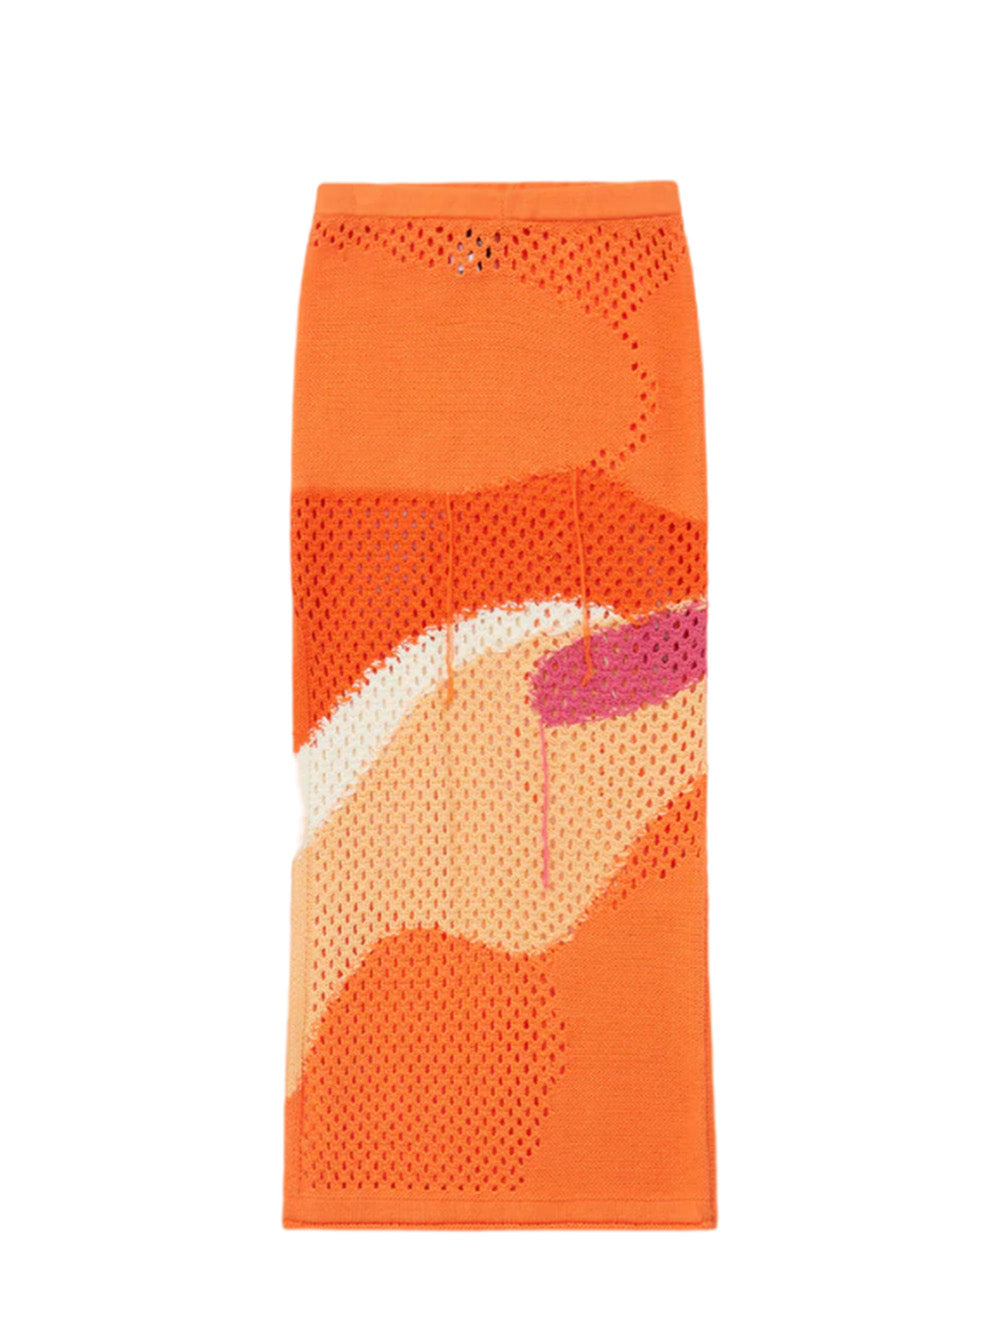 Pompelmo Sunset Knit Skirt (Multi)